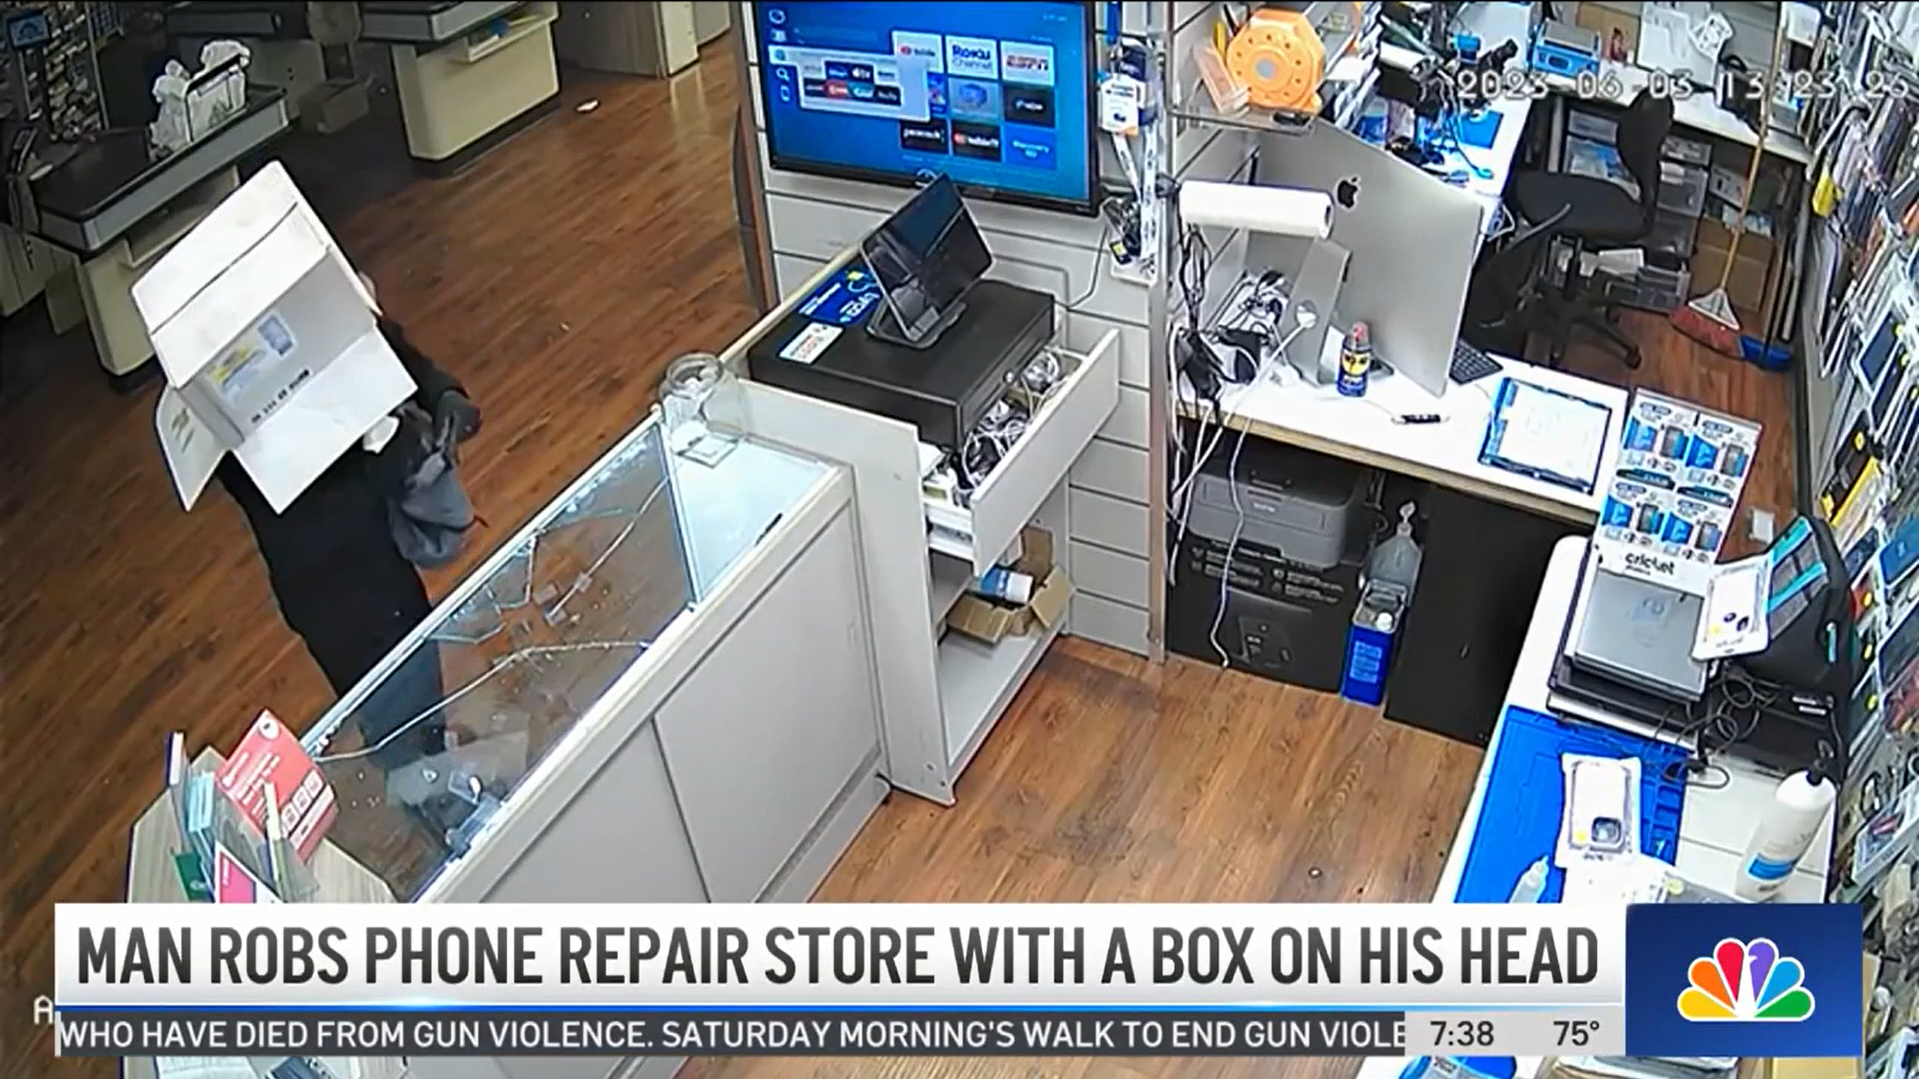 Вор попытался скрыть свою личность с помощью картонной коробки на голове во время кражи iPhone